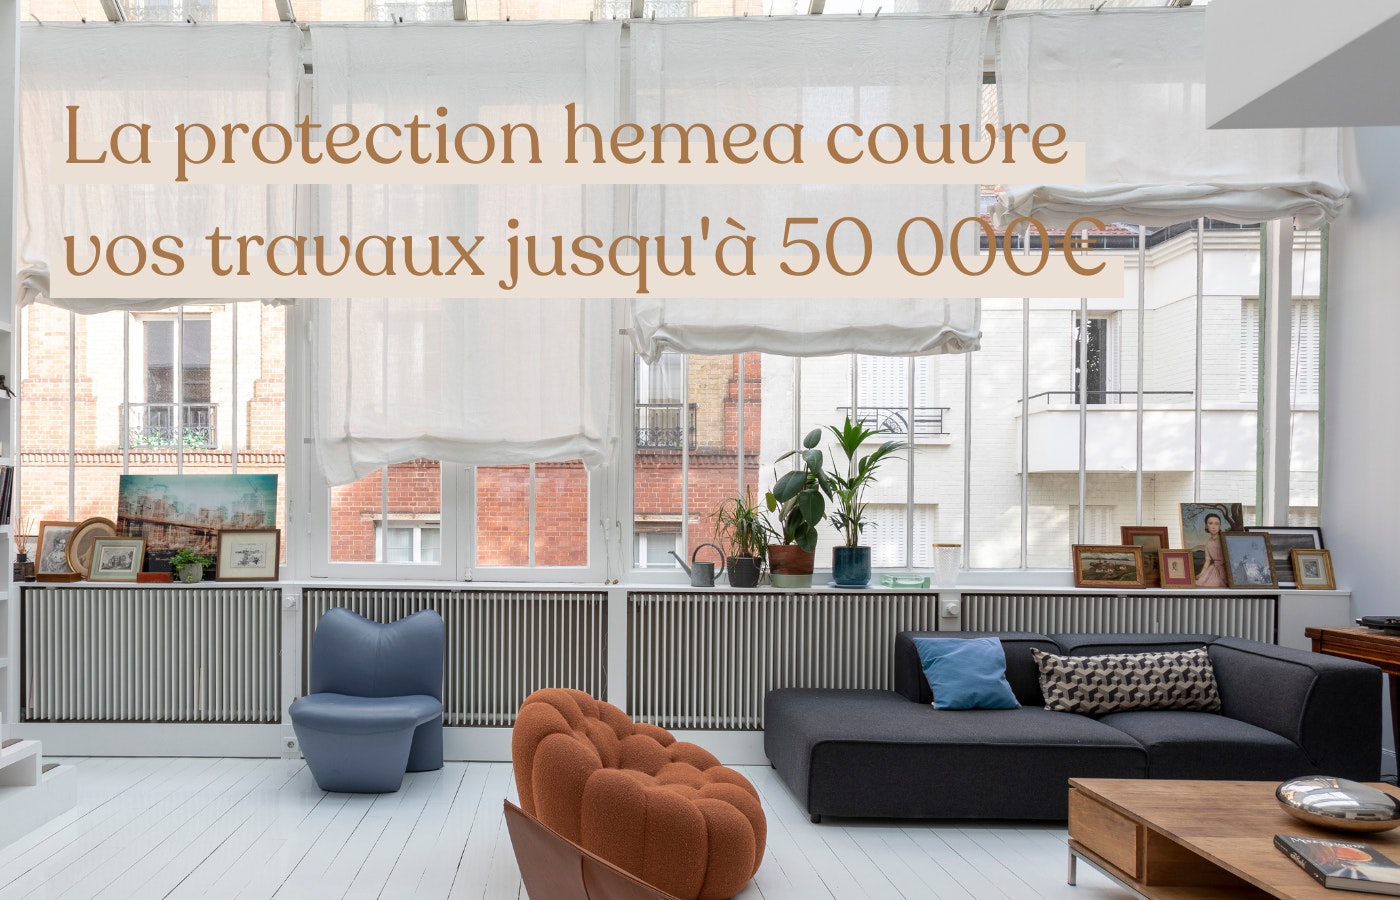 La protection hemea couvre vos travaux jusqu'à 50 000€